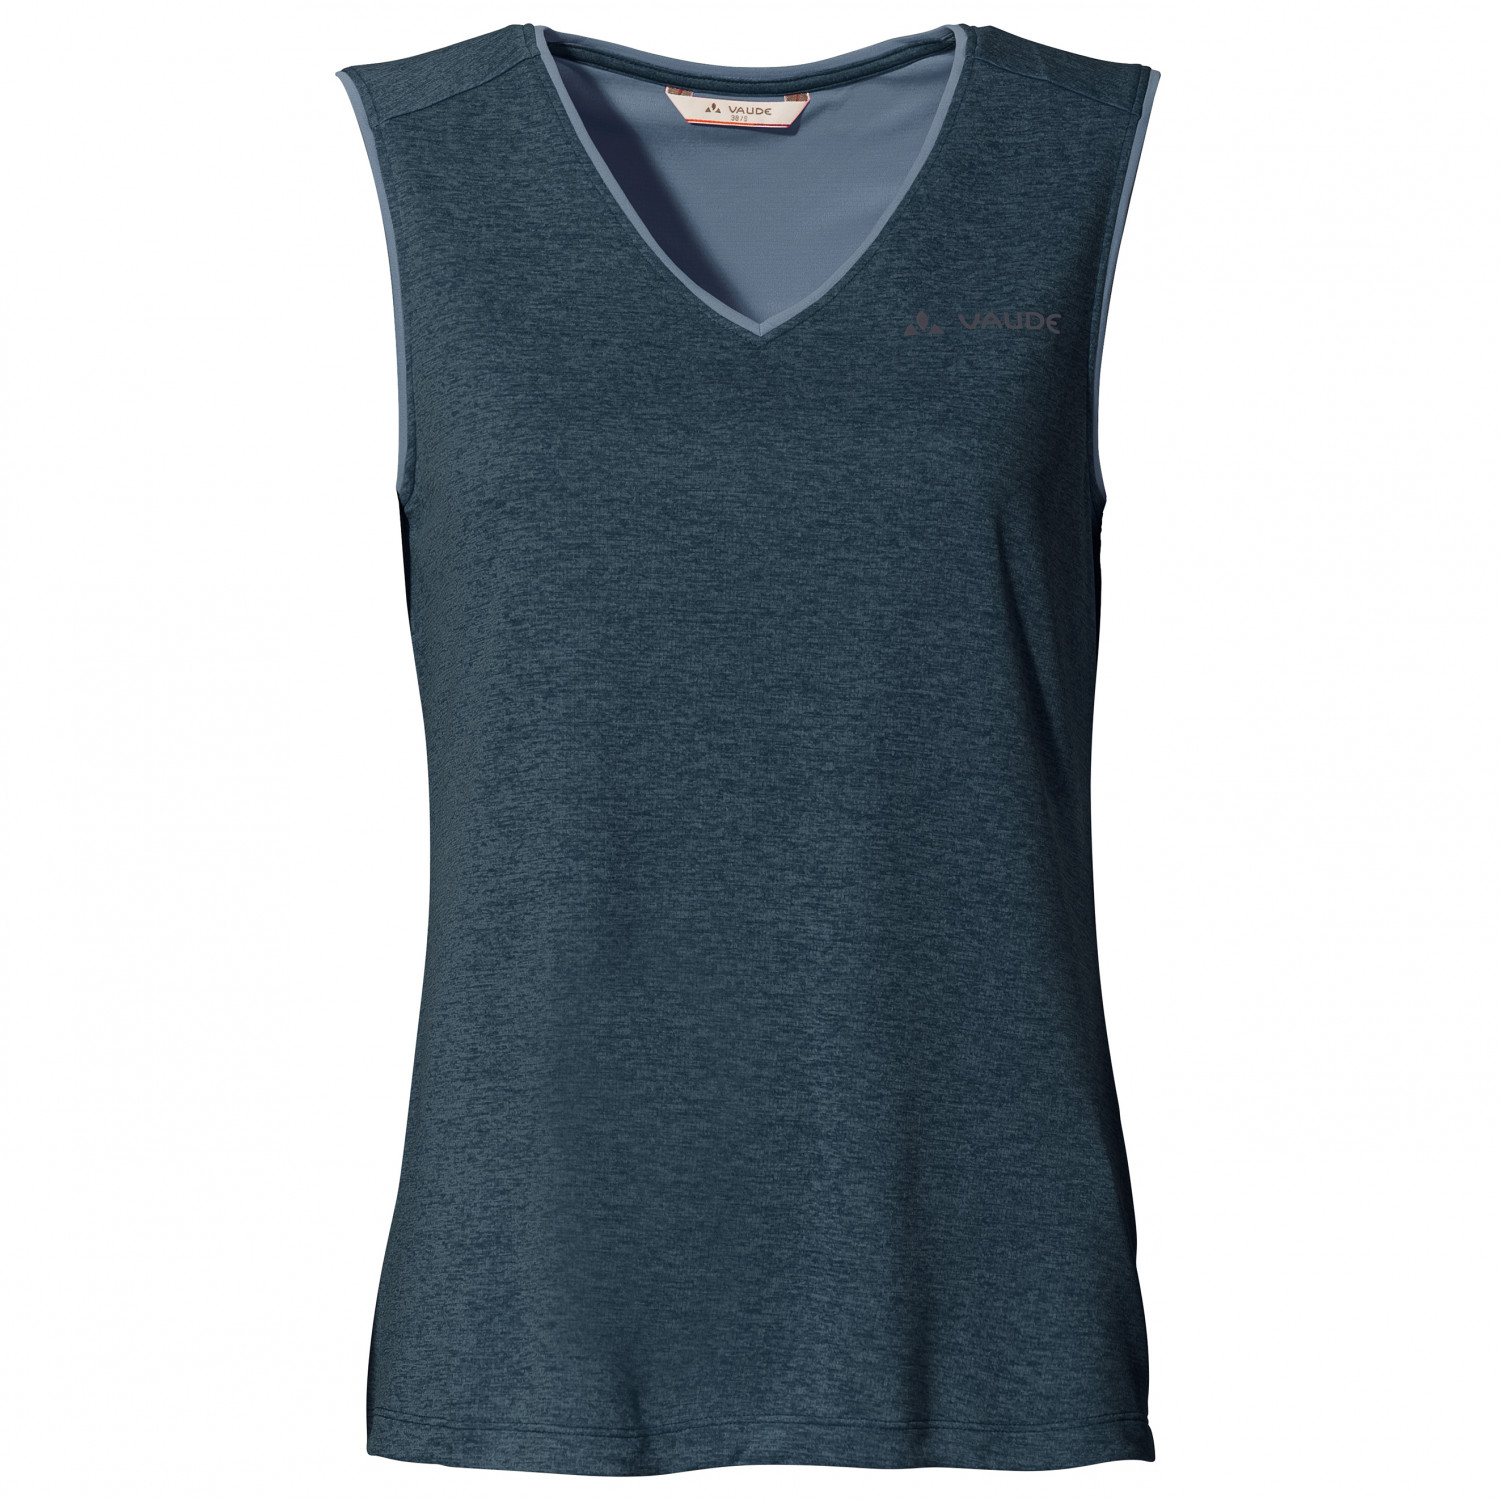 Функциональная рубашка Vaude Women's Essential Top, цвет Dark Sea Uni женский укороченный топ для занятий йогой и спортом